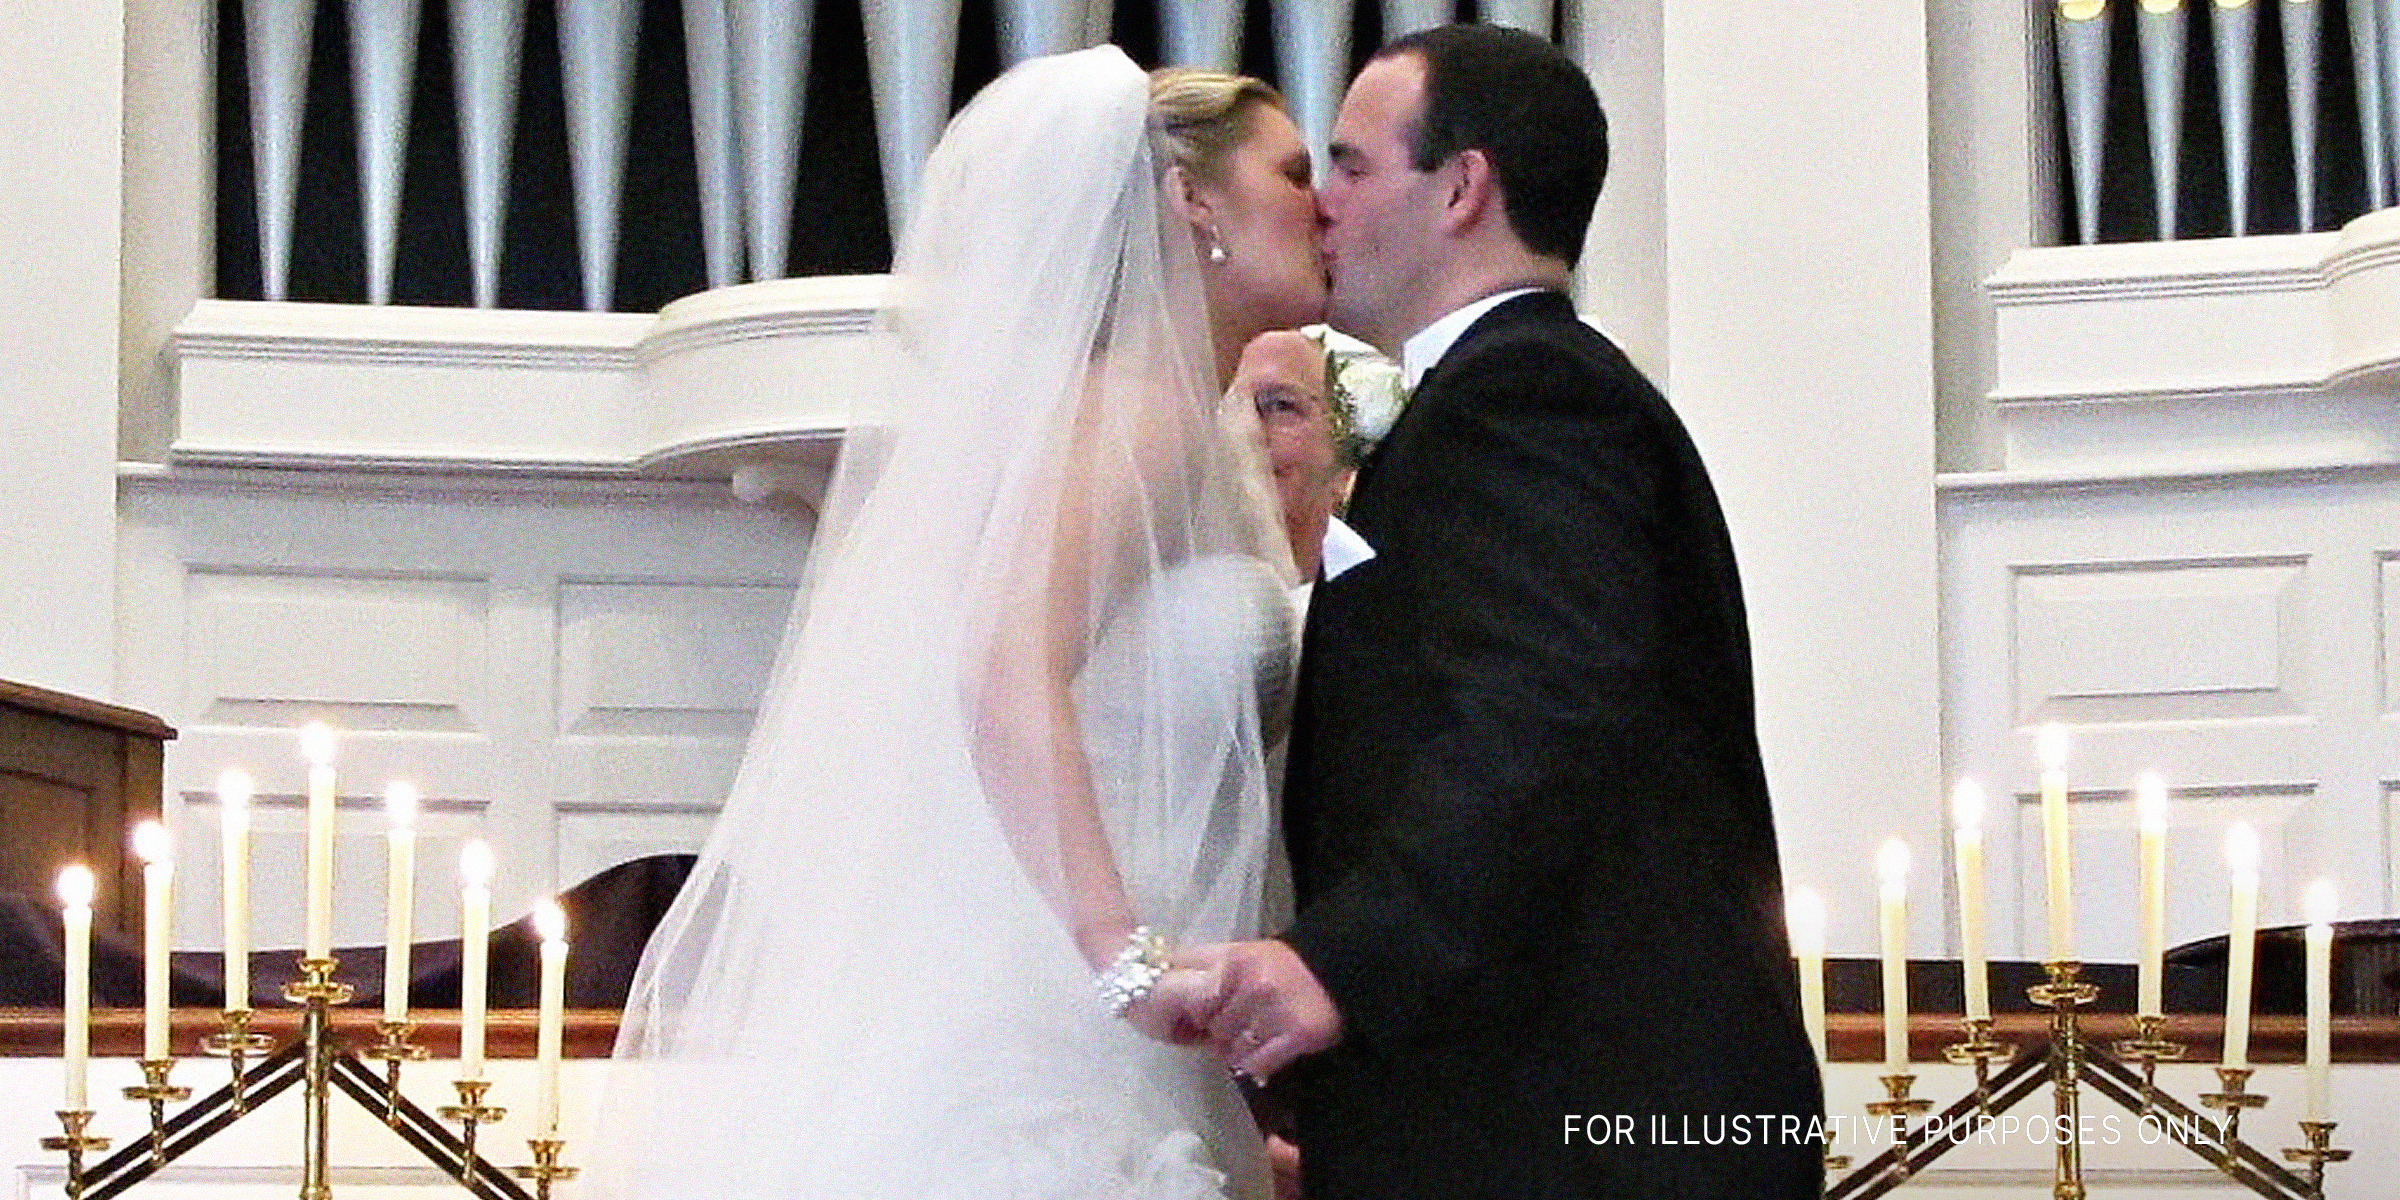 Der erste Kuss eines Paares vor dem Altar | Quelle: Flickr